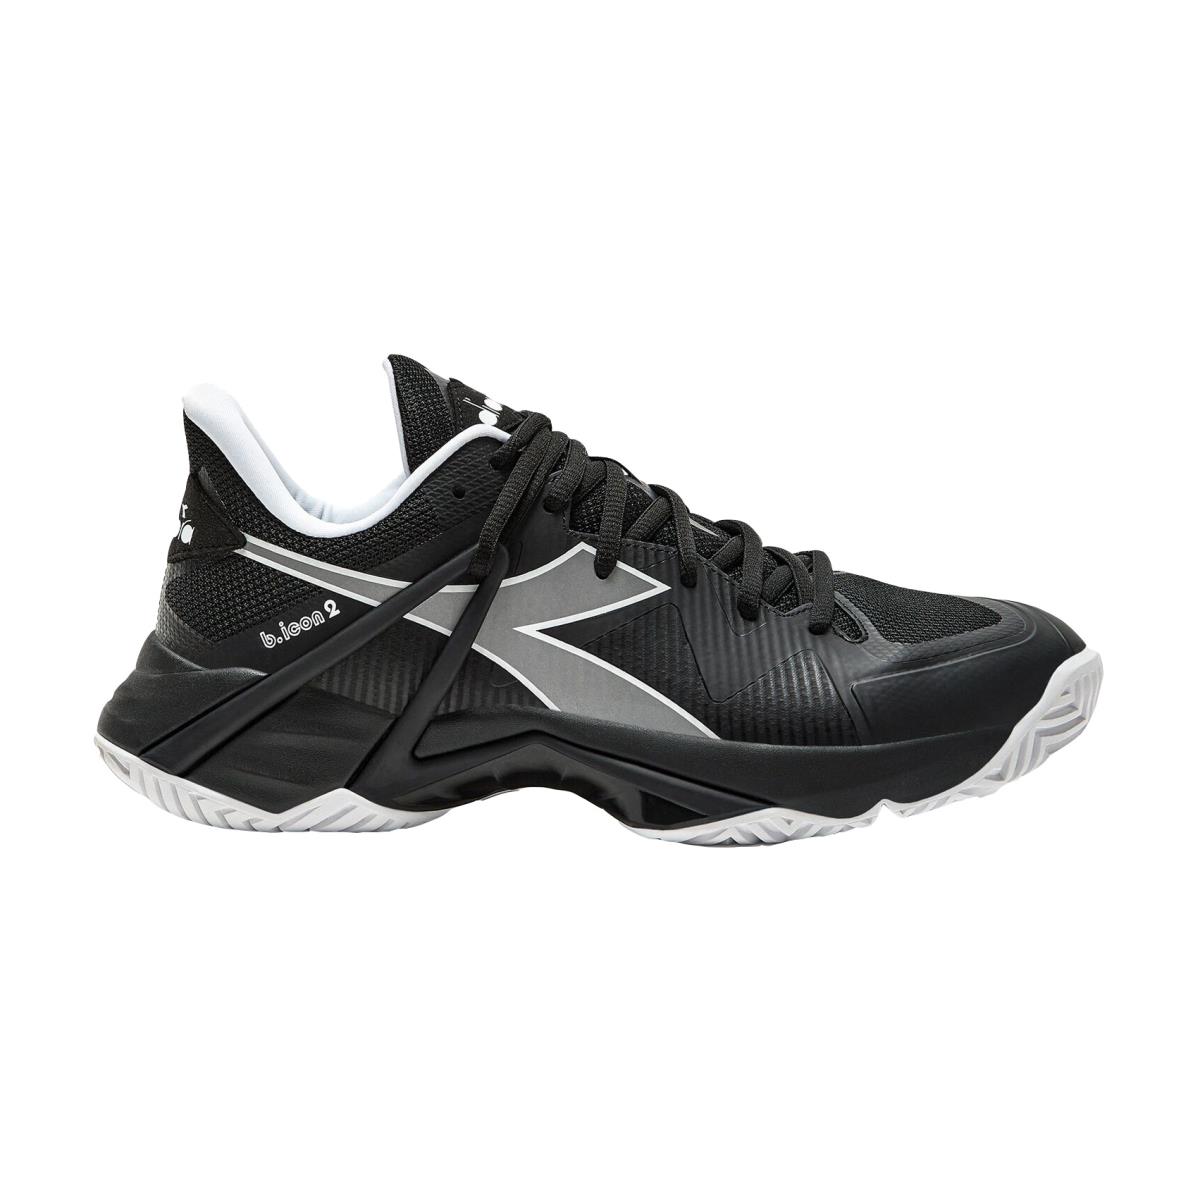 Diadora B.icon 2 All Ground Mens Tennis Shoes Black/Slvr/Wht